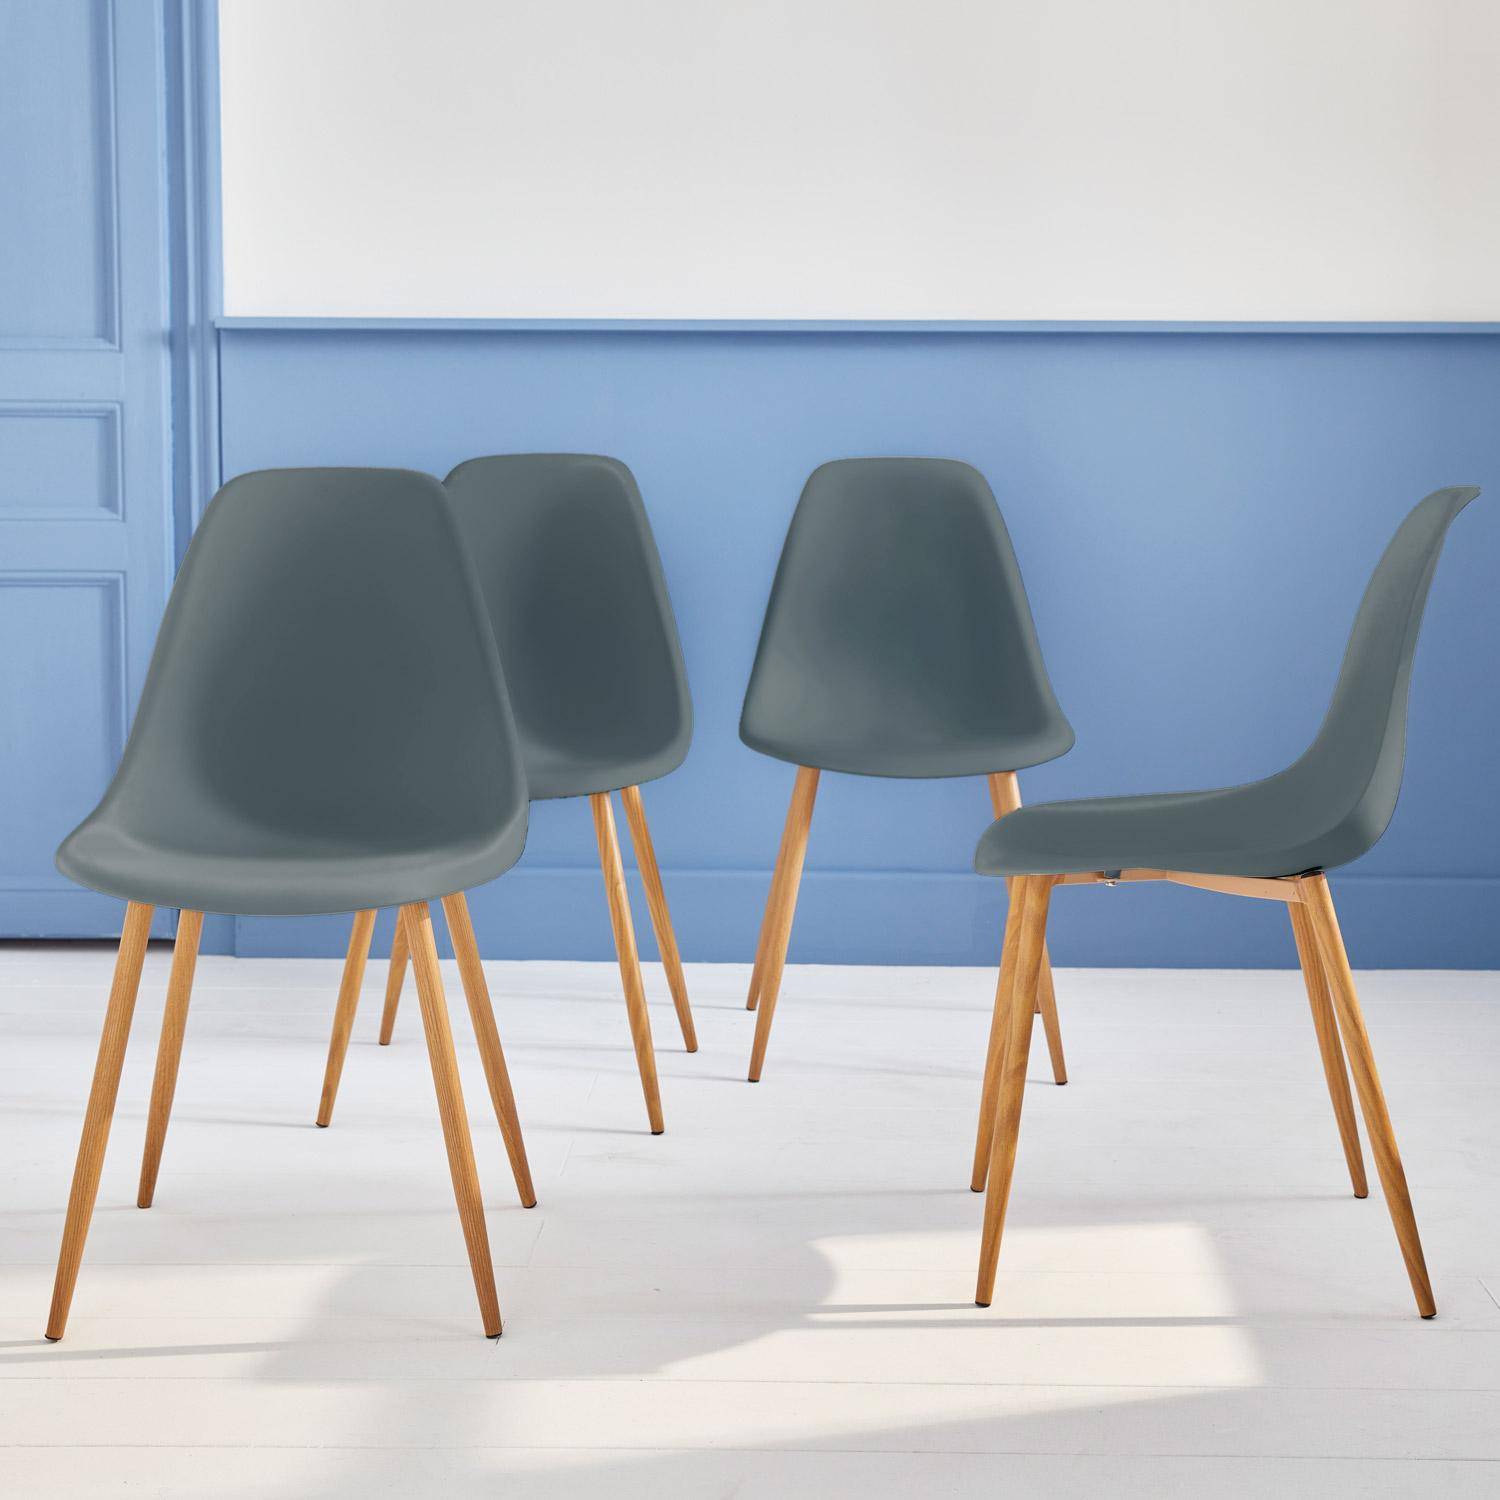 Juego de 4 sillas escandinavas - Lars - patas de metal color madera, sillas de una plaza, color gris,sweeek,Photo2